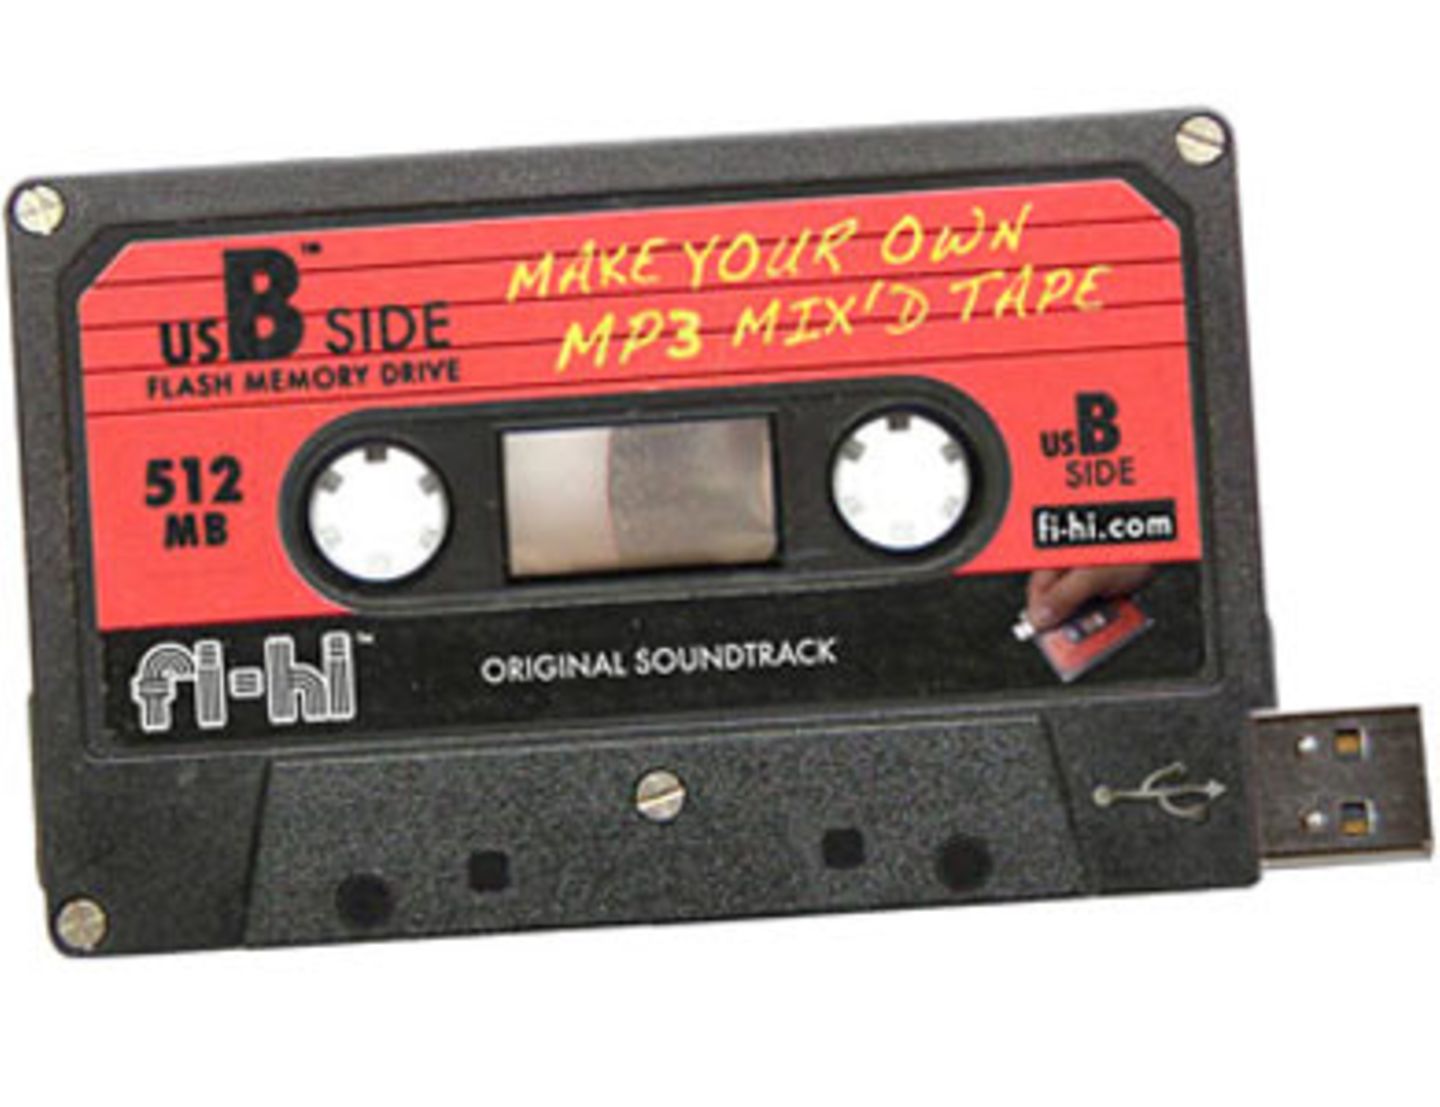 Ihr dachtet, das gute alte Mixtape sei aus der Mode? Falsch gedacht! Es kommt nur etwas moderner daher! Dank des integrierten USB-Sticks könnt ihr diese Kassette einfach mit mp3-Songs befüllen und dann immer und immer wieder anhören! Von fredflare.com, um 20 Euro.